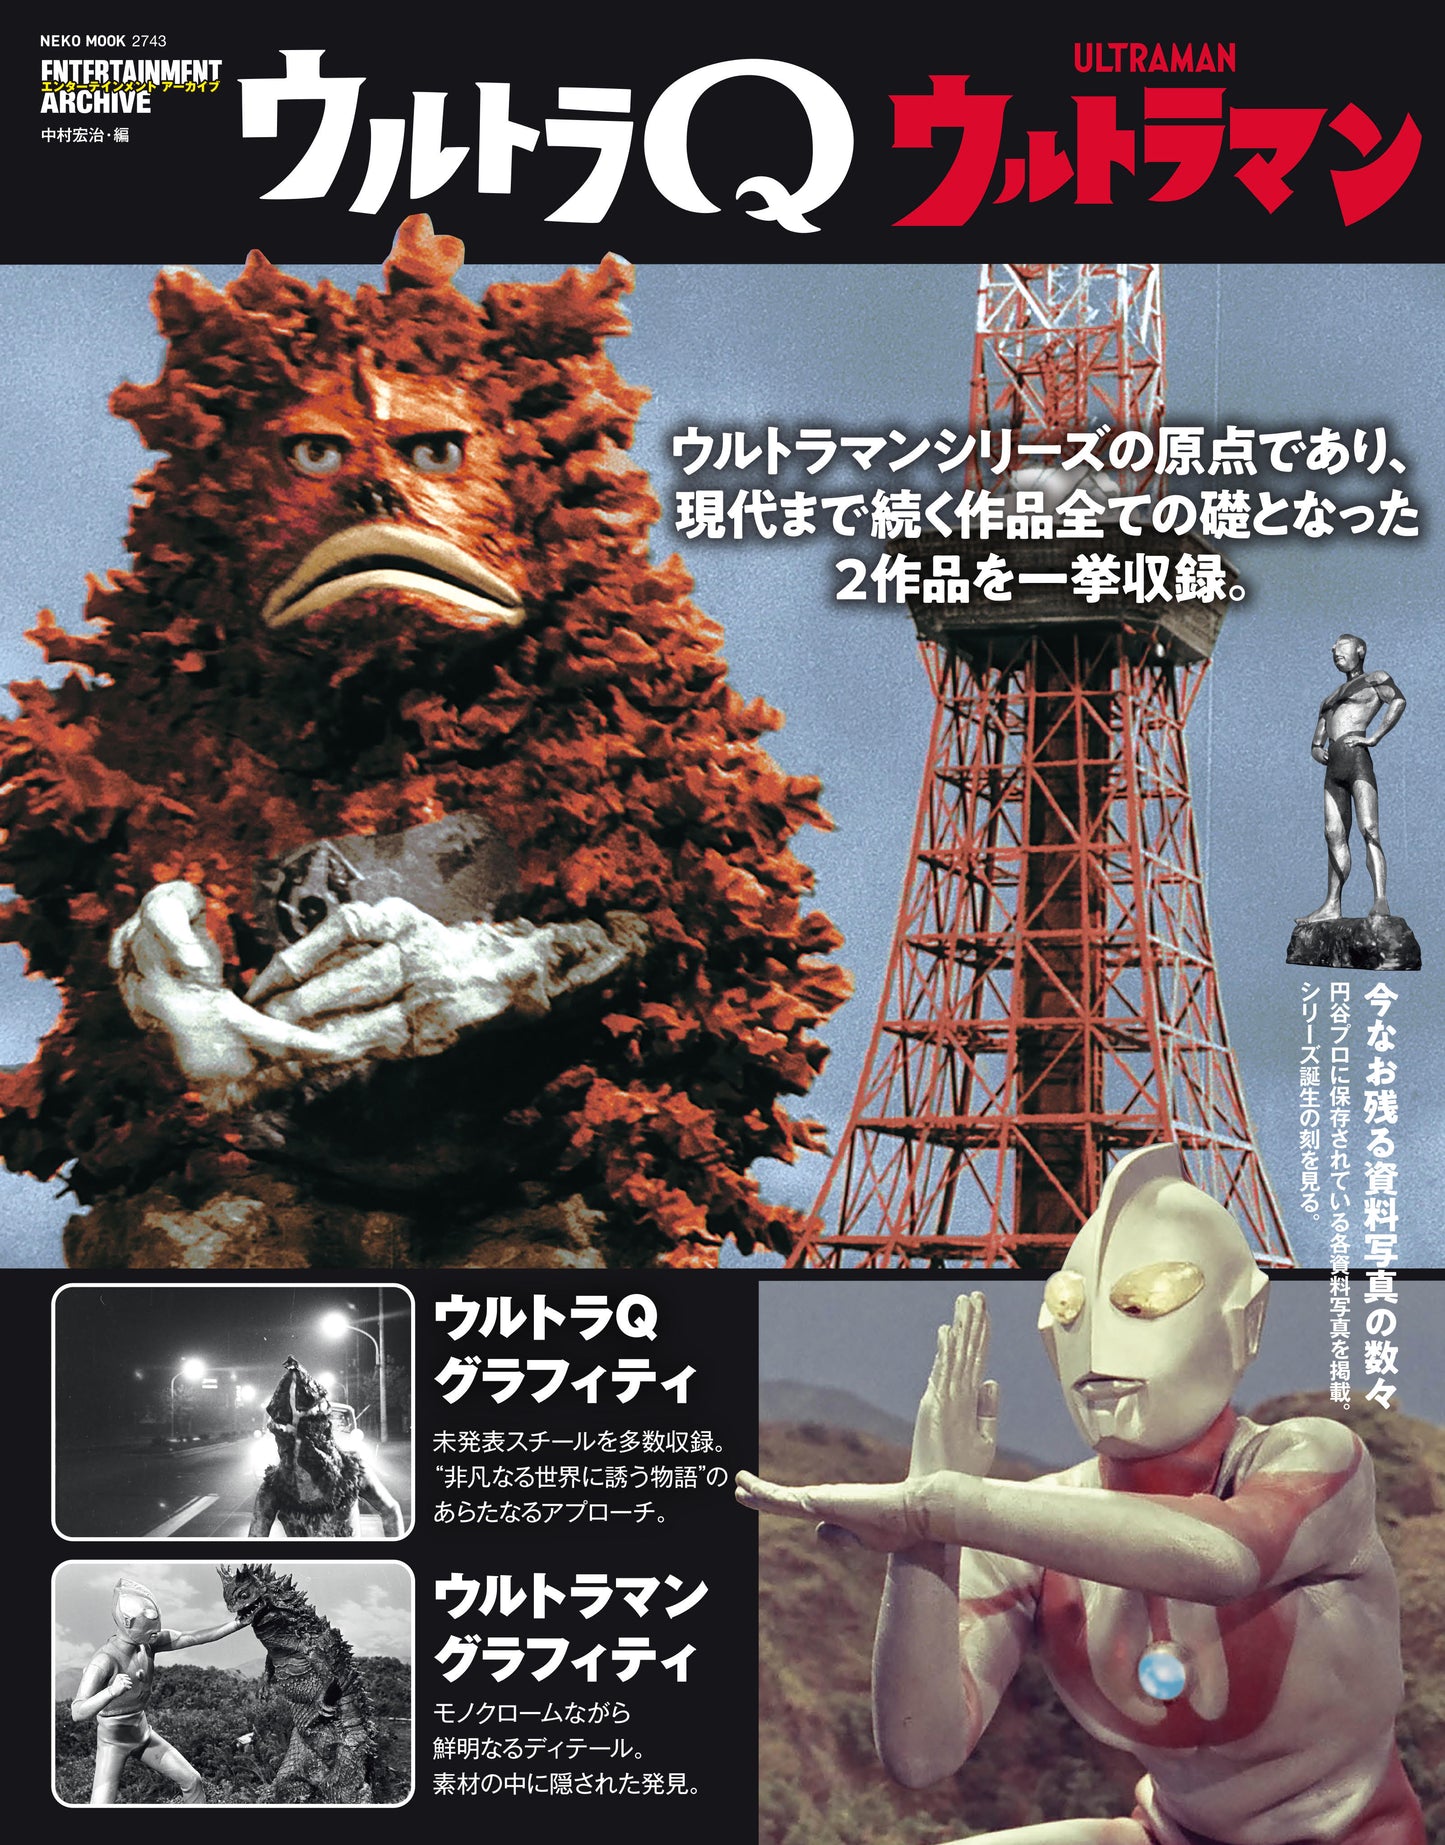 Entertainment Archive Ultra Q Ultraman [Reprint]